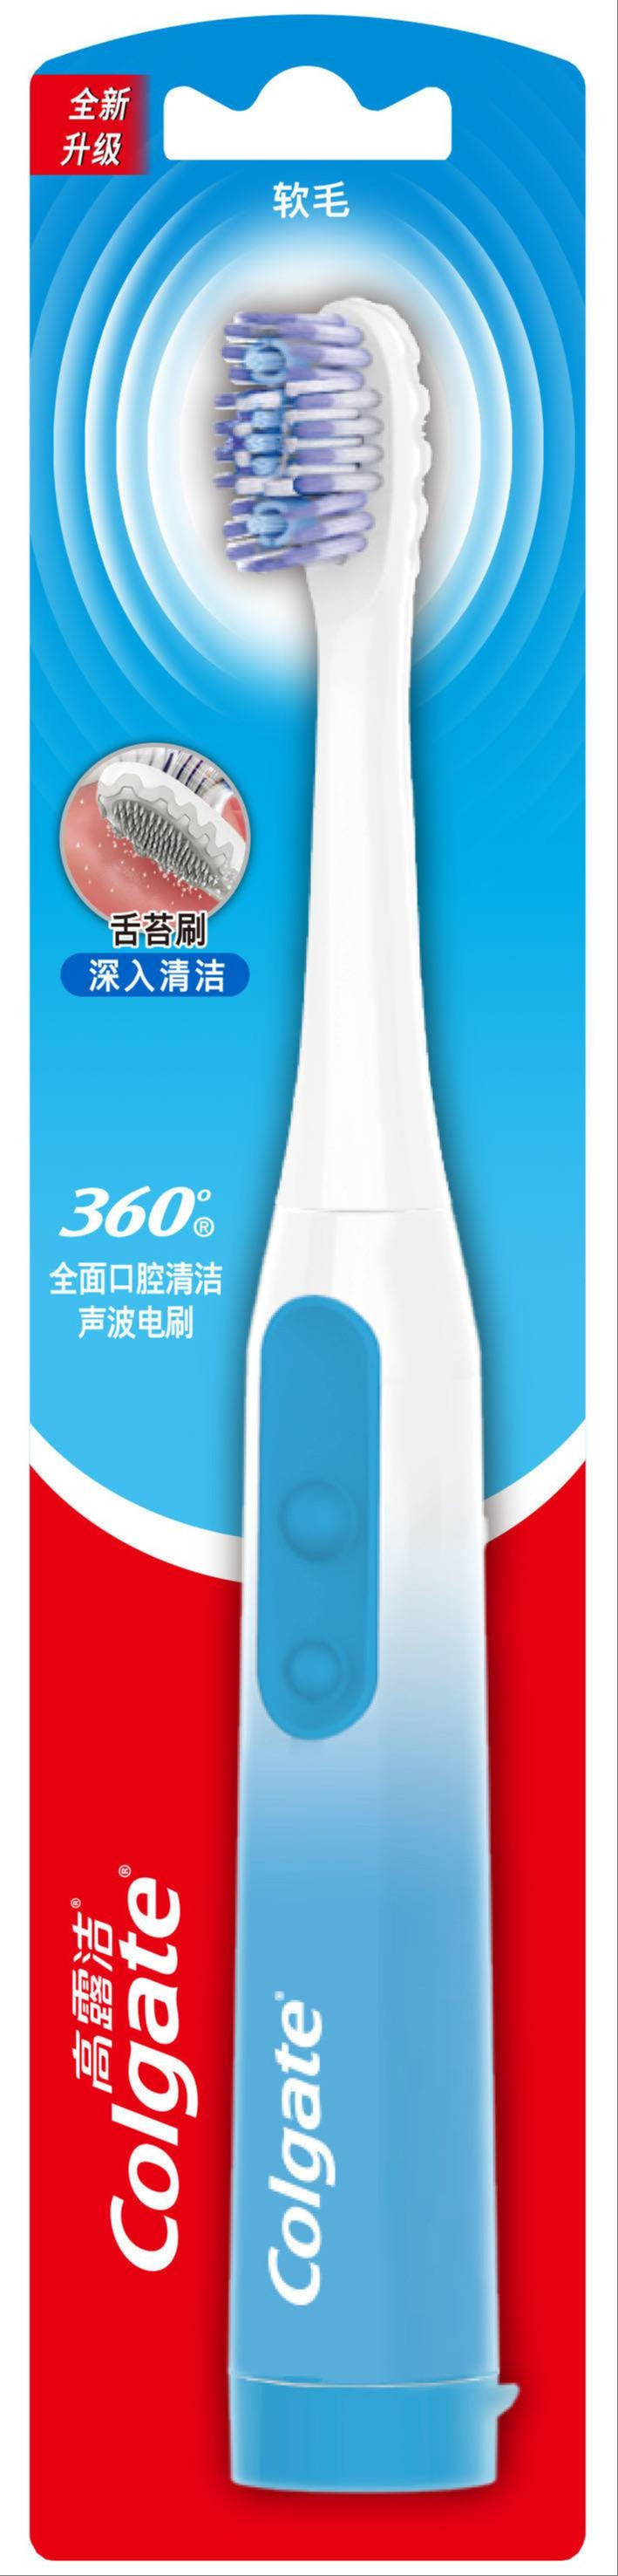 高露洁/Colgate 360全面口腔清洁声波电动牙刷